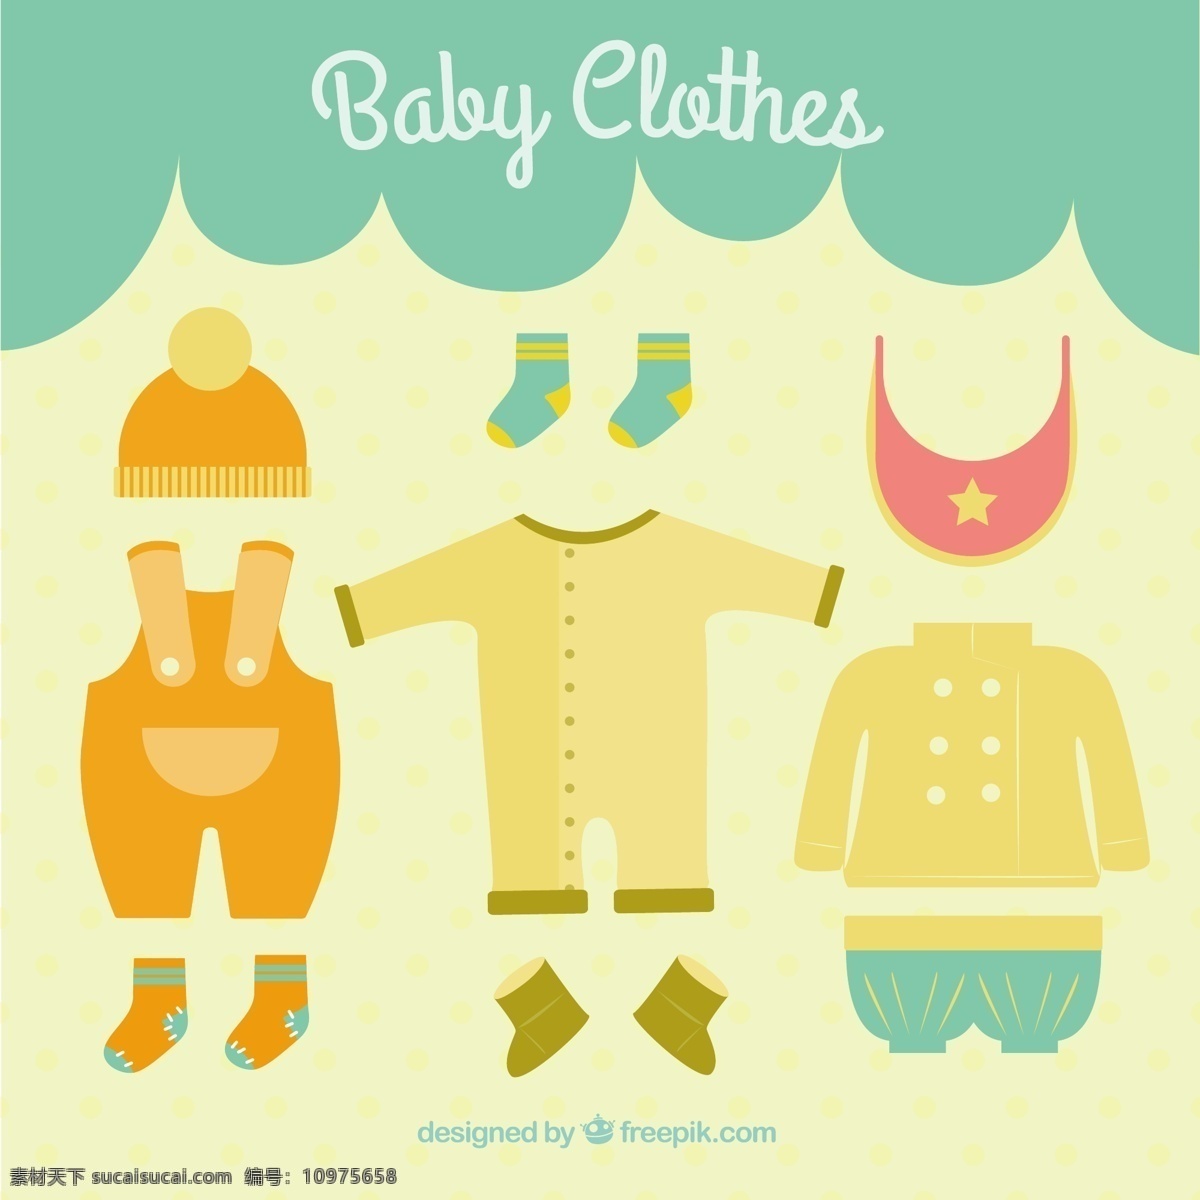 可爱 婴儿 衣服 时尚 孩子 风格 婴儿服装